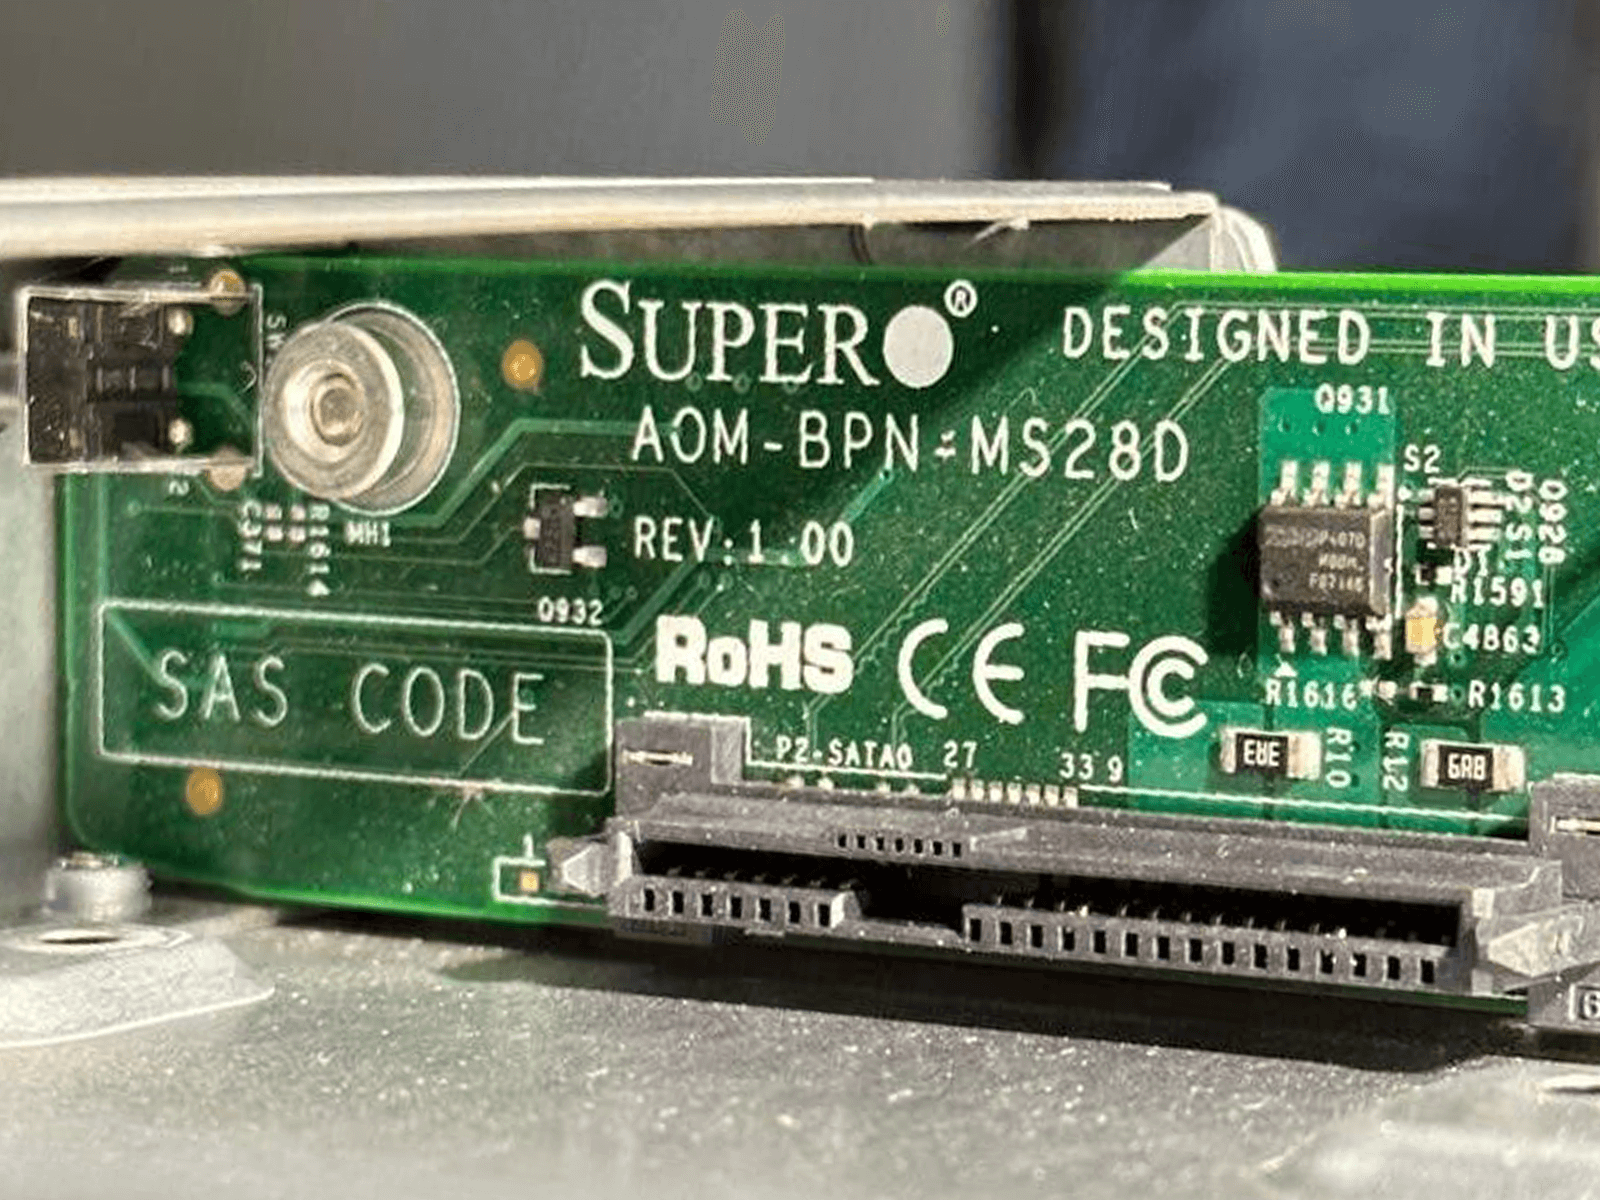 SuperMicro MBE-628E 9x MBI-6128R-T2 18x Xeon E5-2620 v3/v4 1152GB 4xPSU 2x CMM.